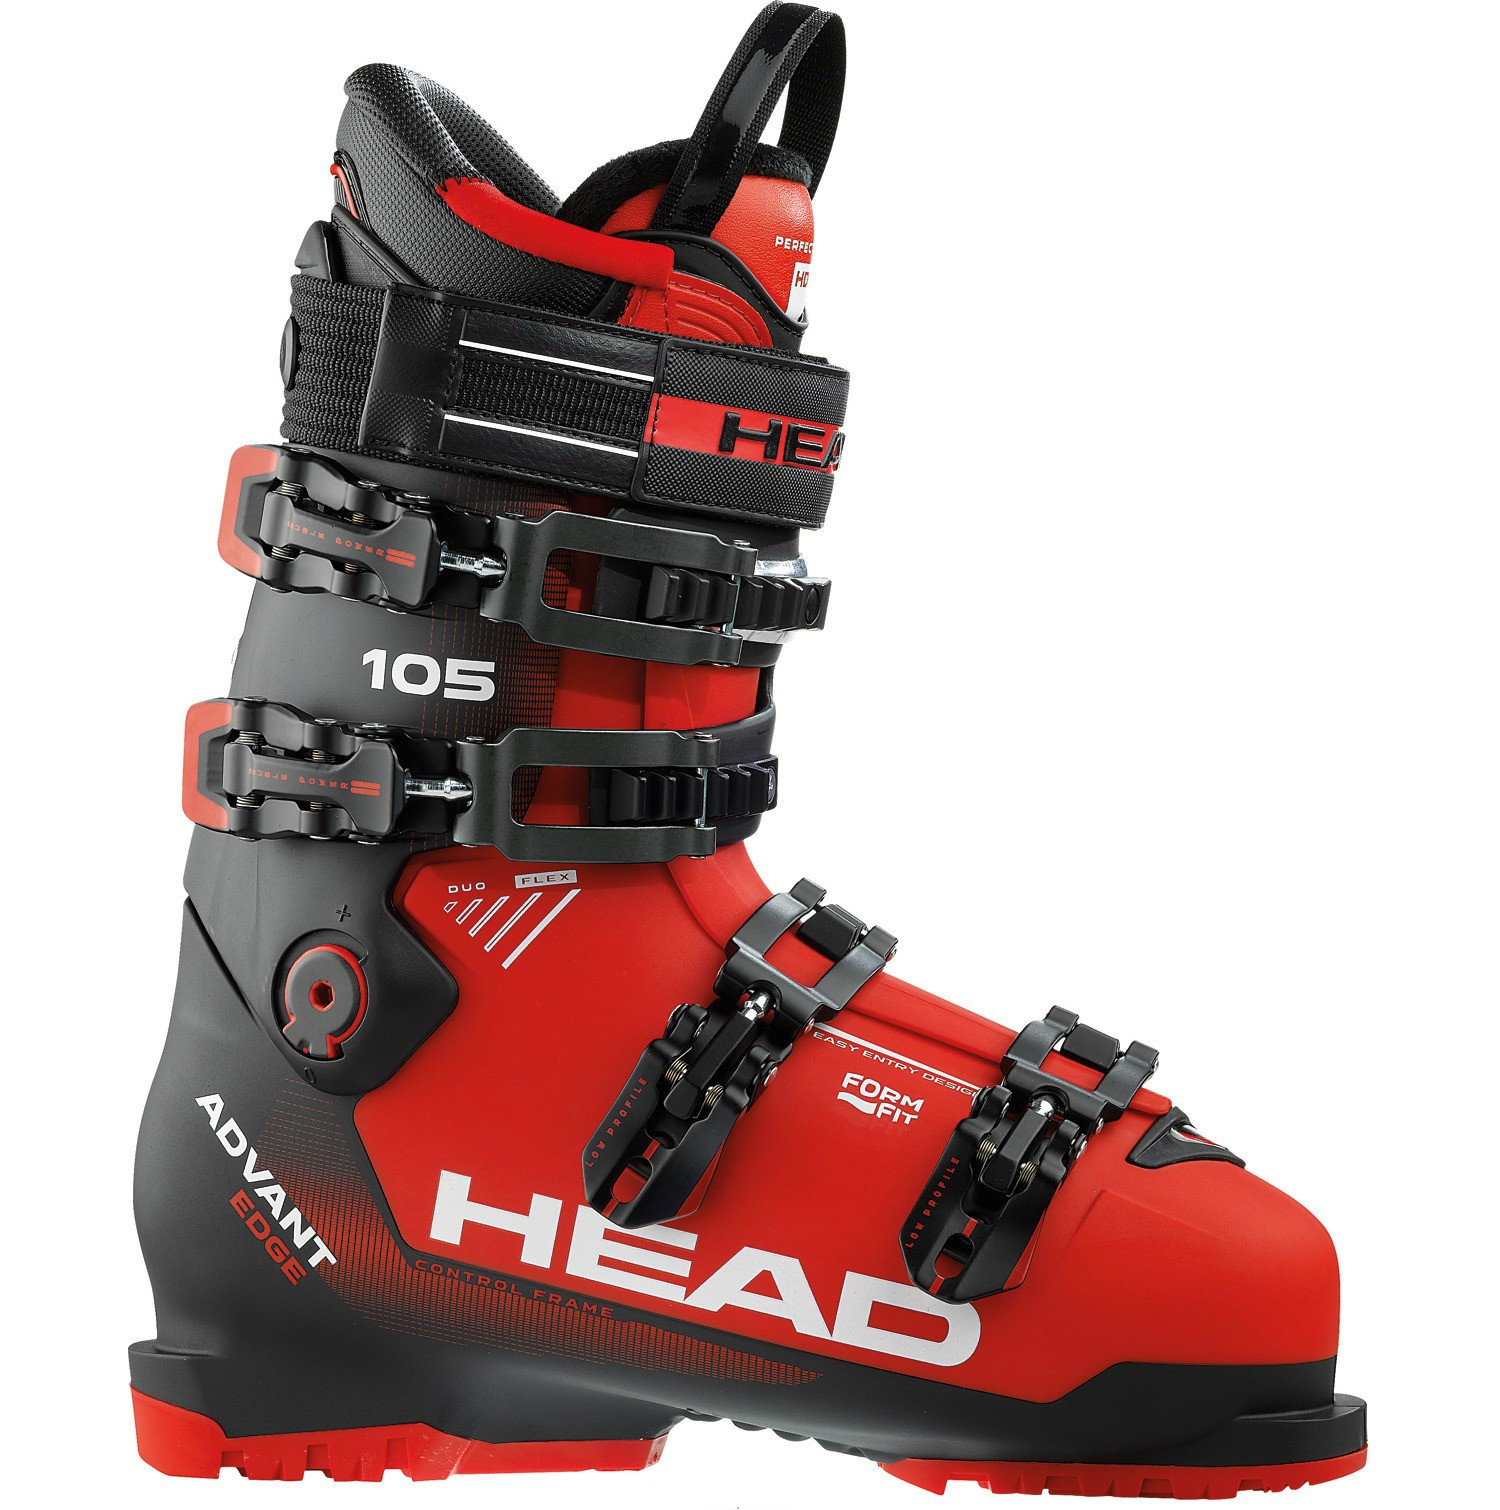 Head Advant Edge 95 Herren-Skistiefel Skischuhe 4-Schnallen Pisten-Schuhe NEU